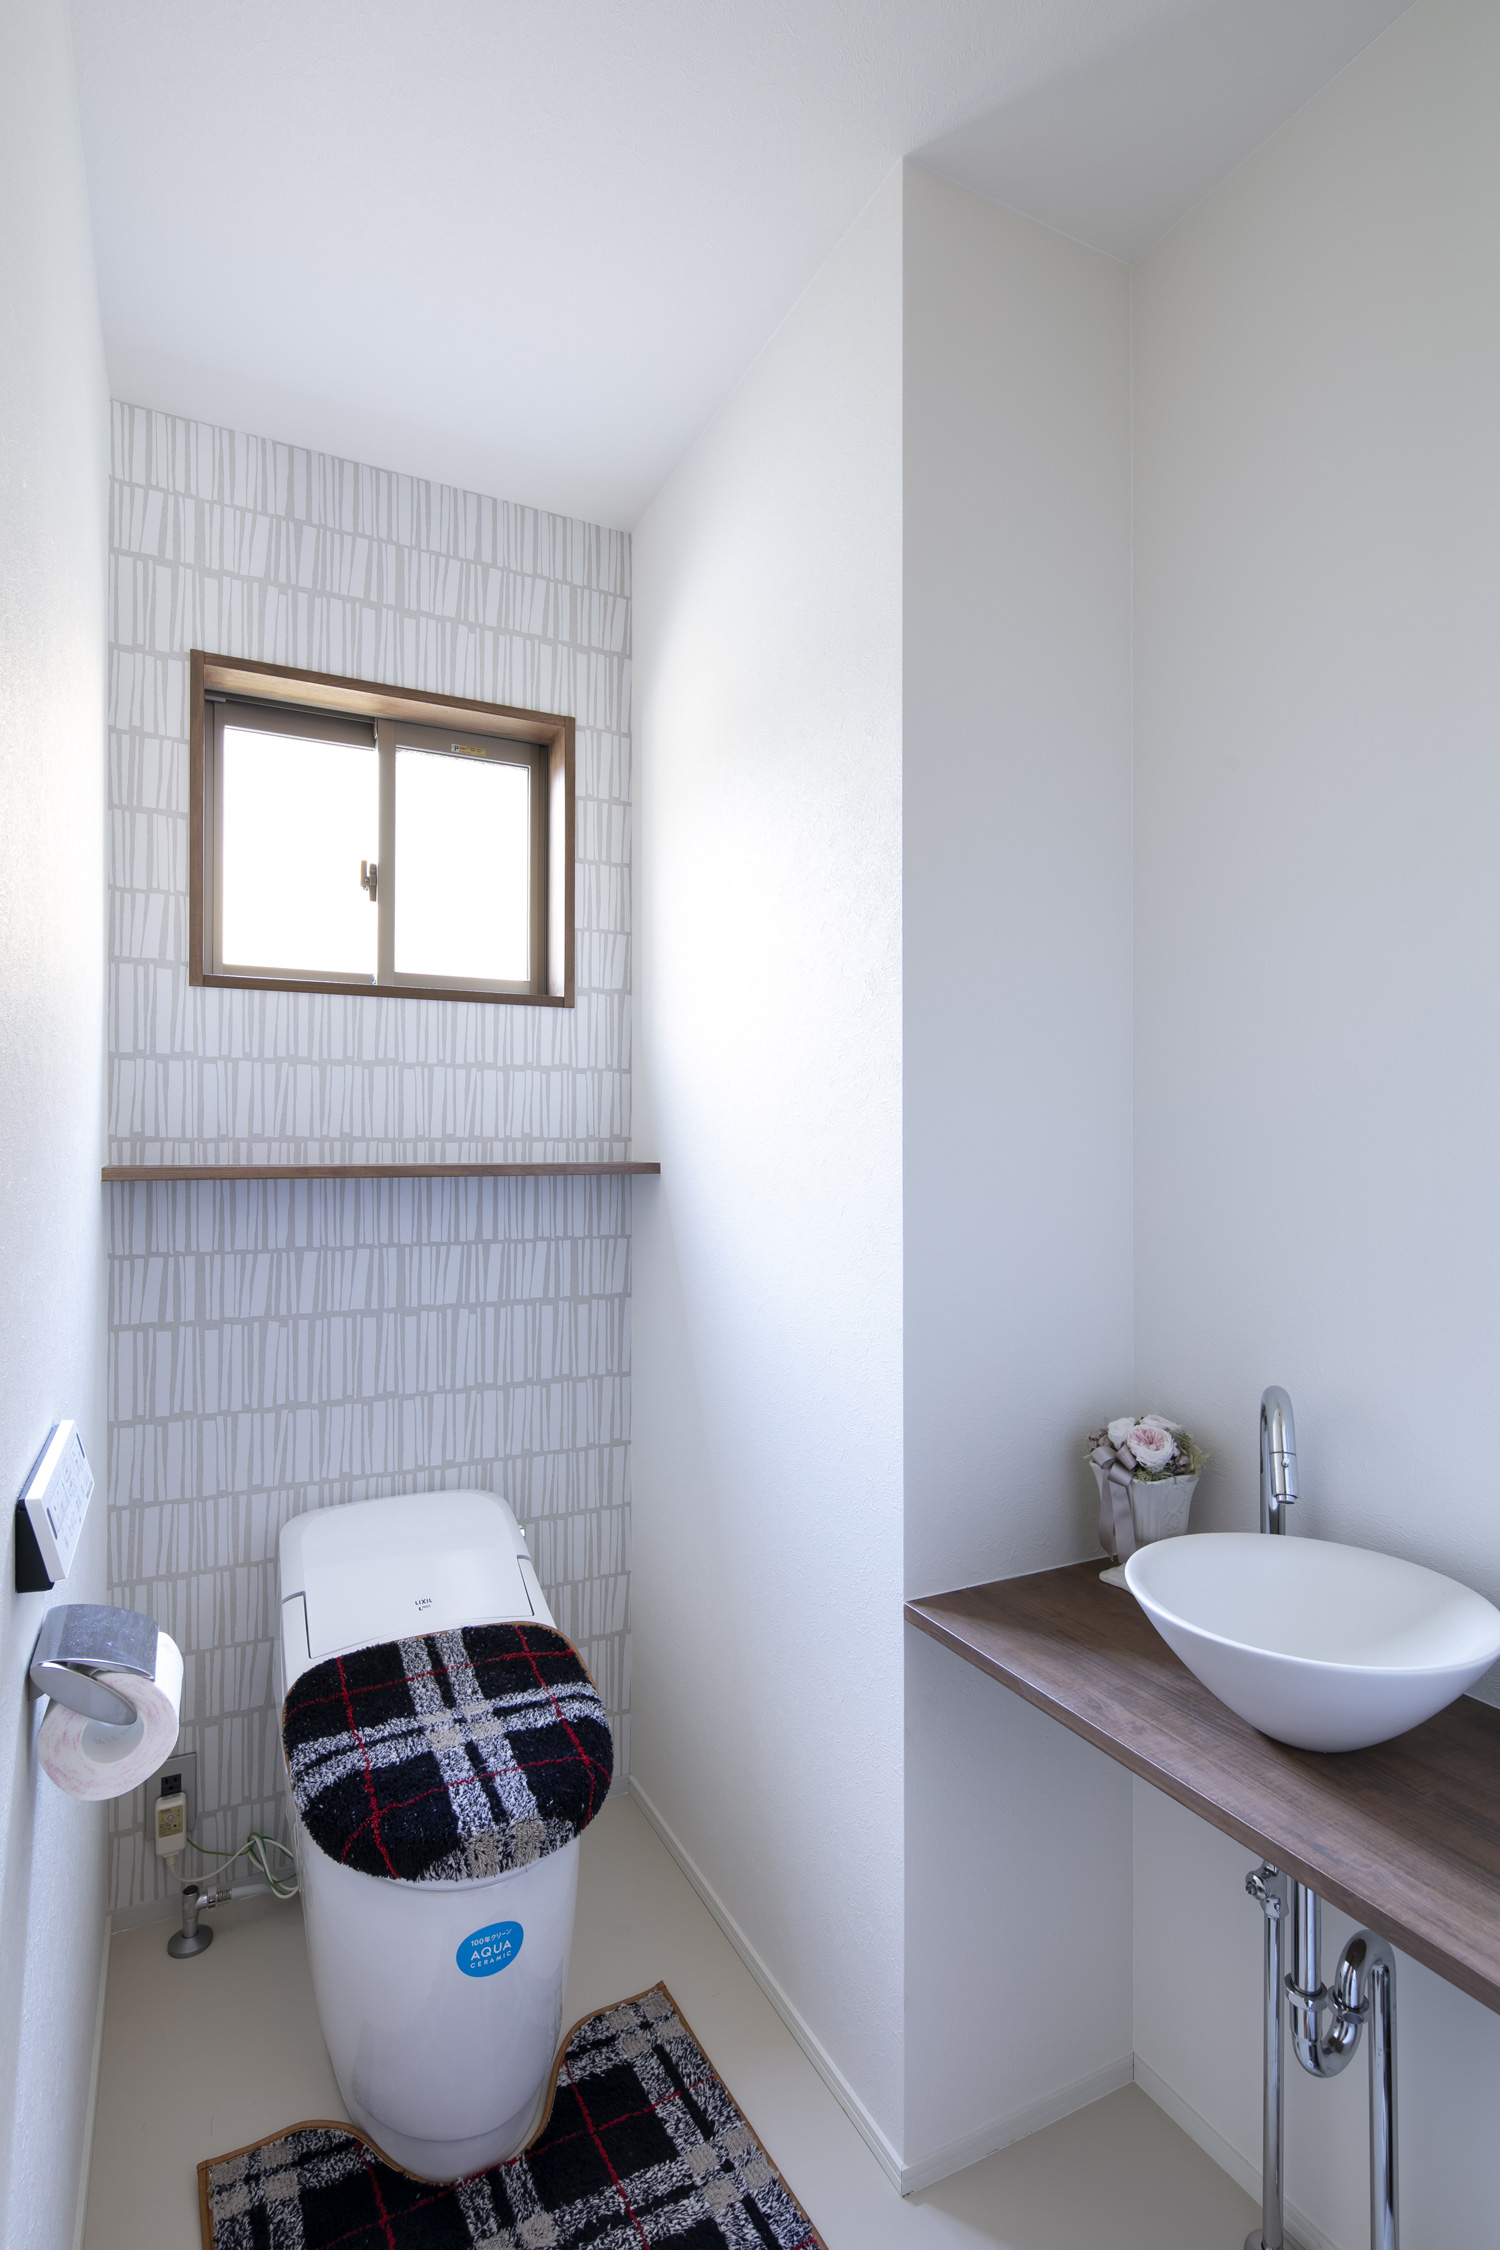 タイル風のデザインのアクセントクロスがある、薄型手洗い付きのトイレ・デザイン住宅